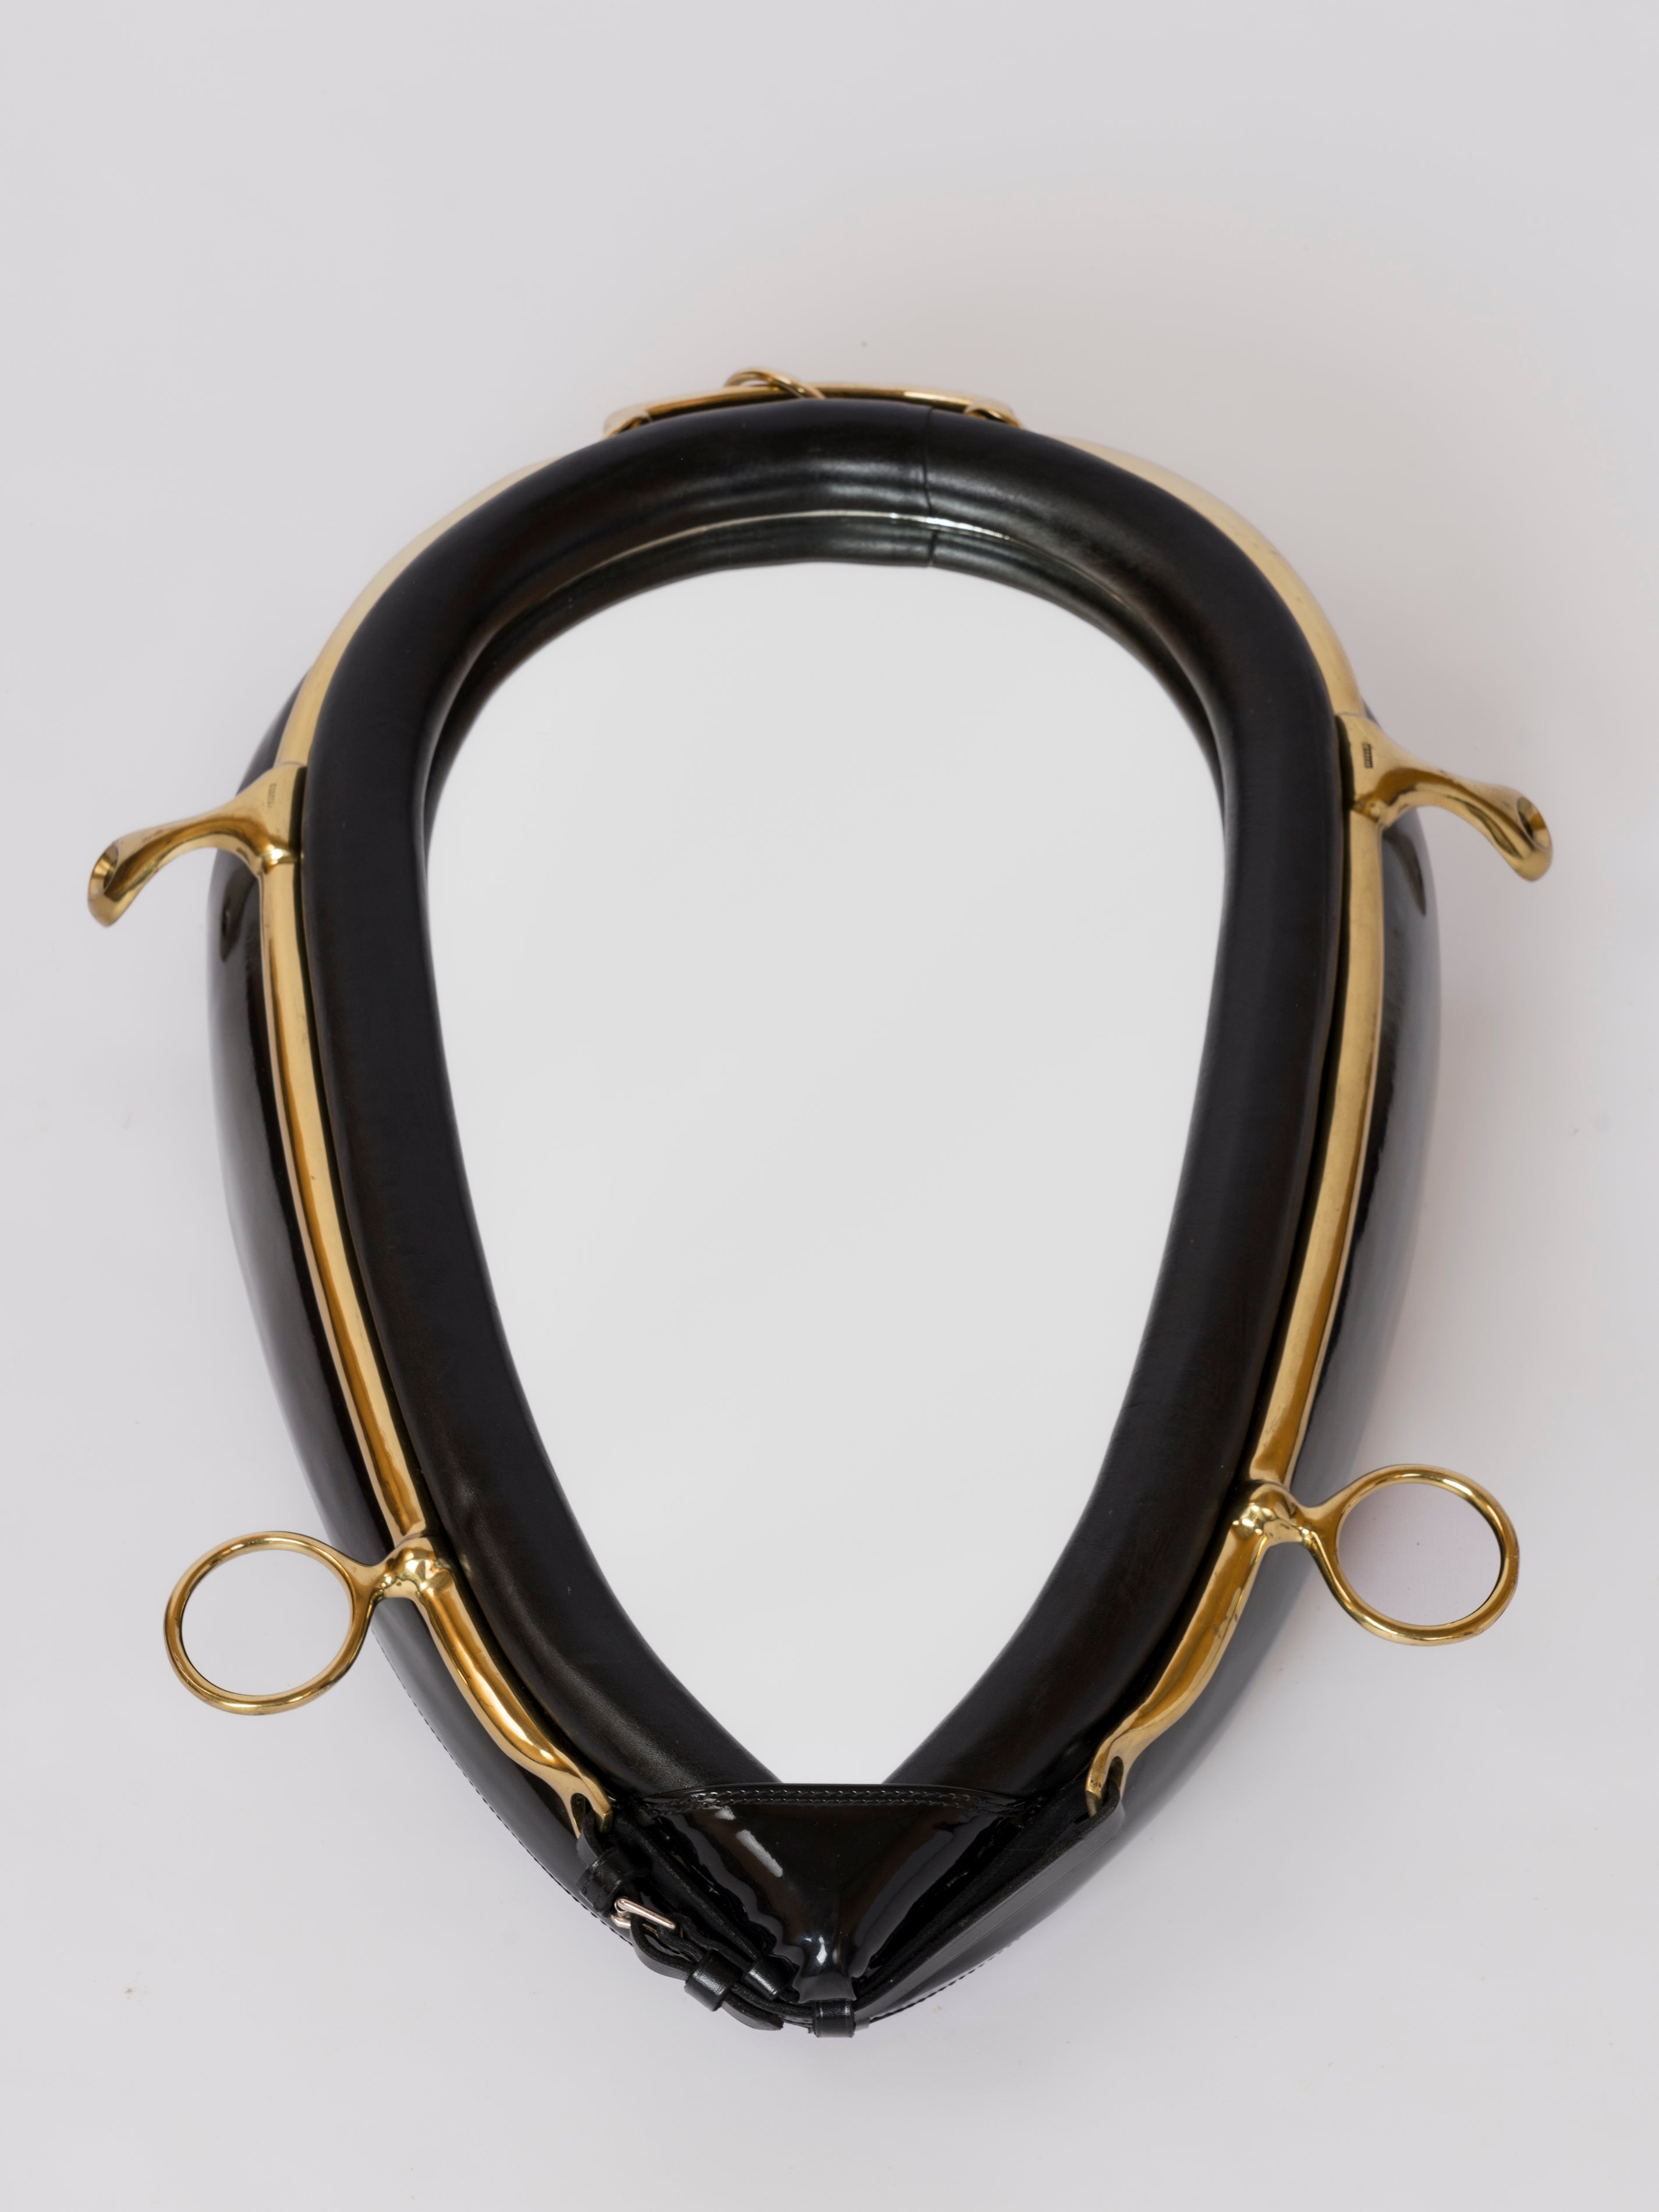 Wandspiegel im Stil von Hermès aus schwarzem Lederimitat mit Messingbändern und -verzierungen zum Thema Reitsport.
Gürtel und Schnalle am unteren Ende des Spiegels vorhanden.
In gutem Vintage-Zustand. Patina auf Messing.
Dieser Spiegel wird aus